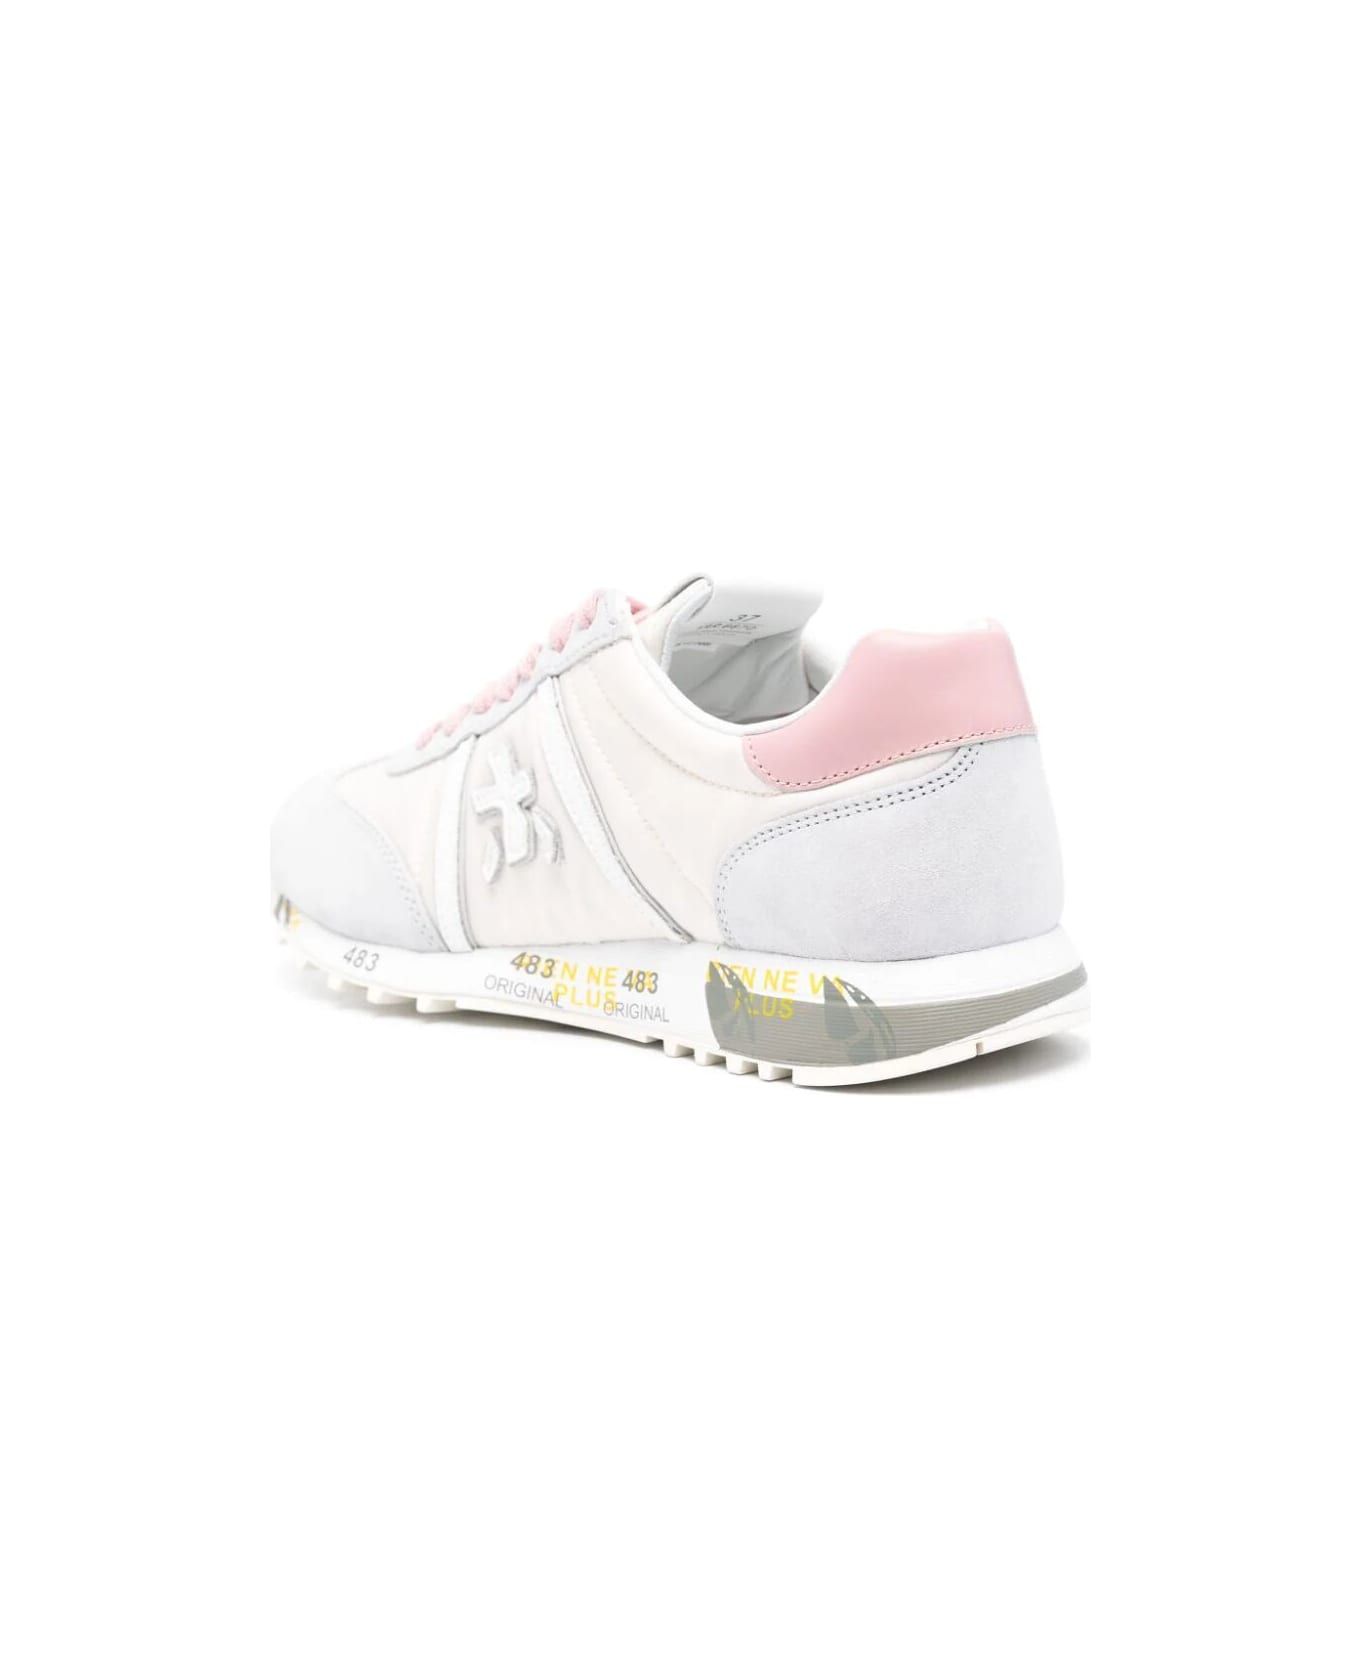 Premiata Lucyd Bi Material Sneakers - Pink